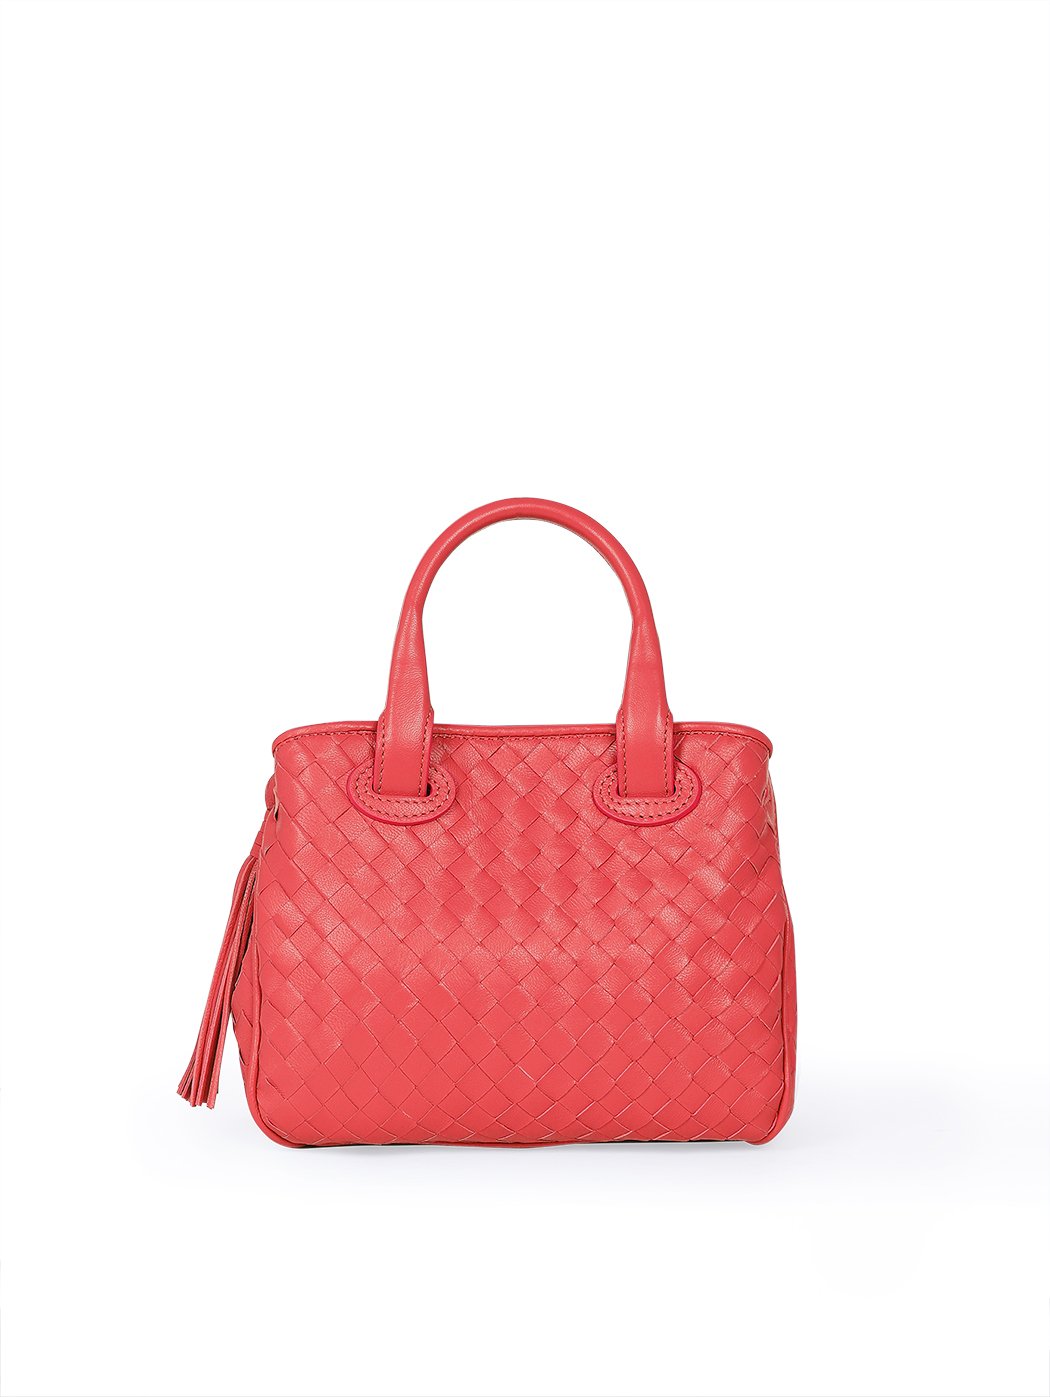 Женская плетеная сумочка коллекции Intrecci красного цвета